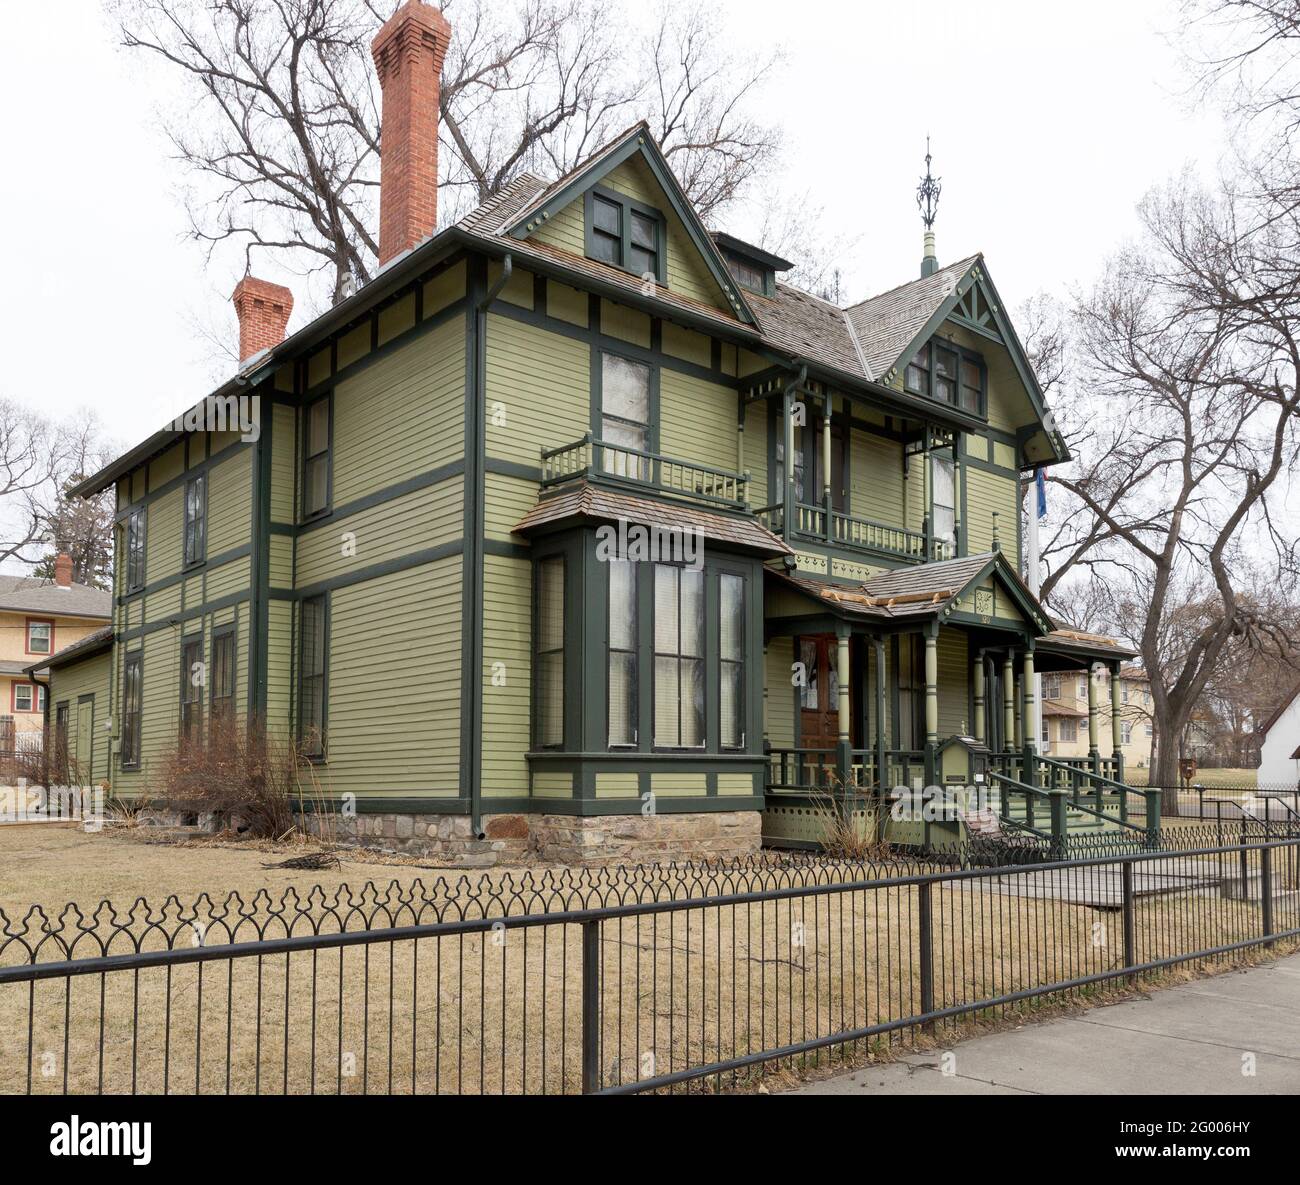 1884 viktorianisches Haus diente als North Dakota Governors' Mansion in Bismarck von 1893-1960. ASA Fisher war der ursprüngliche Besitzer und verkaufte später t Stockfoto